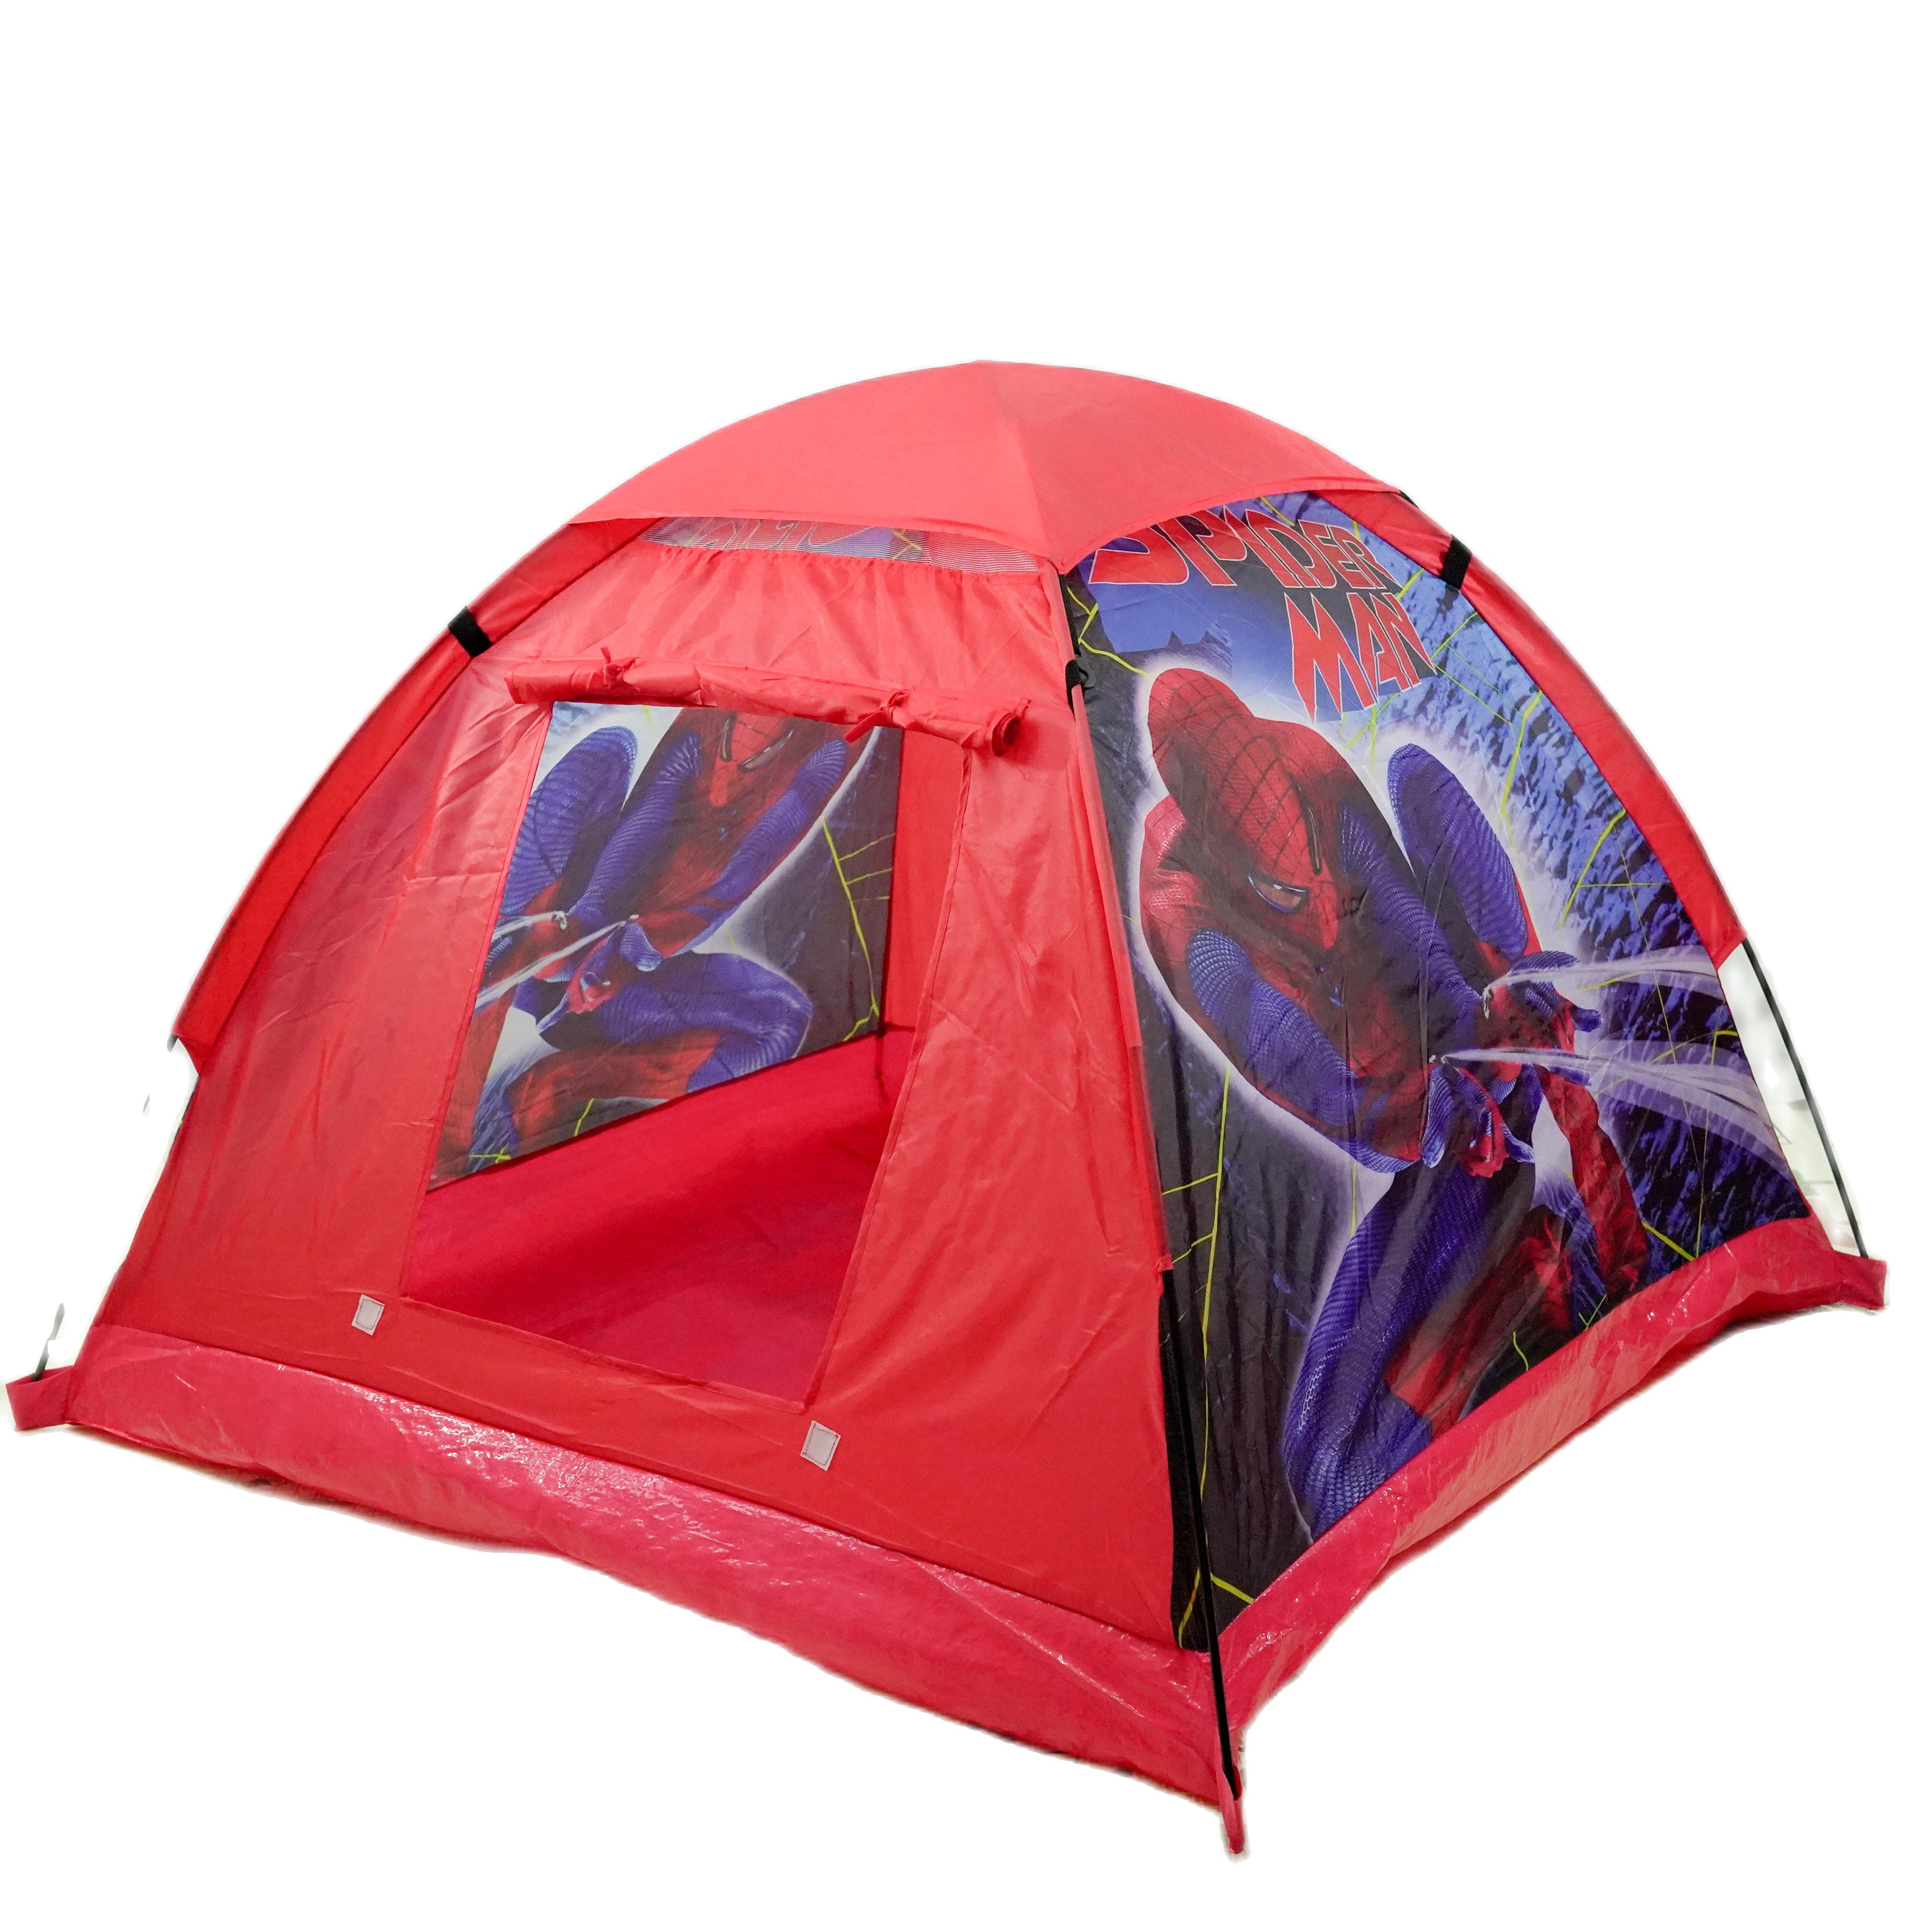 Tenda Anak Bermain Camping Indoor Outdoor - Motif Spiderman & Barbie - Tenda  anak Motif Sppiderman - Tenda anak motif Barbie - Tenda Anak Karakter